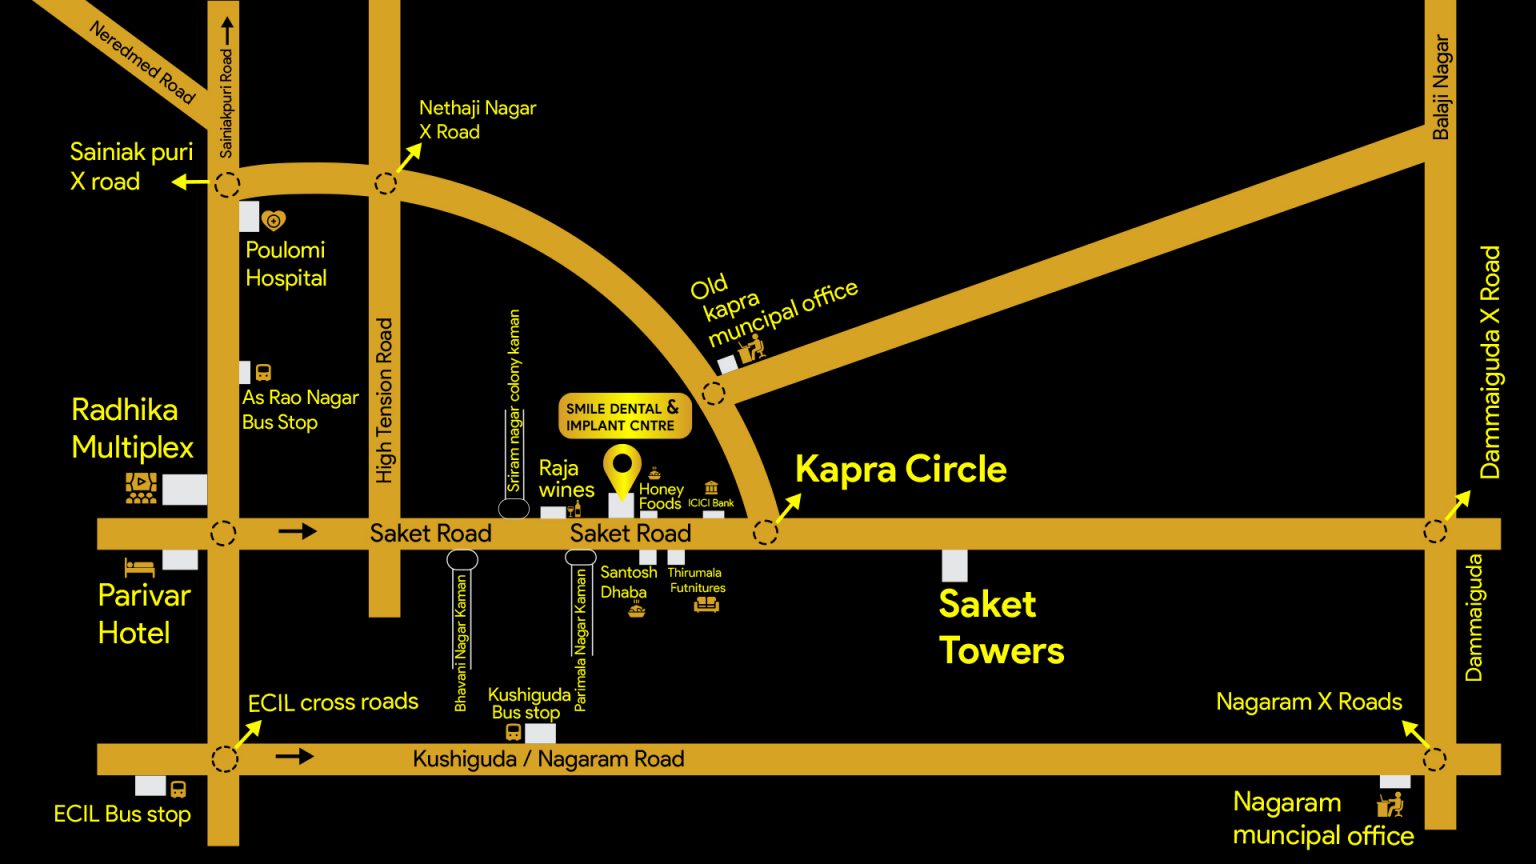 route-map-copy-1536x864